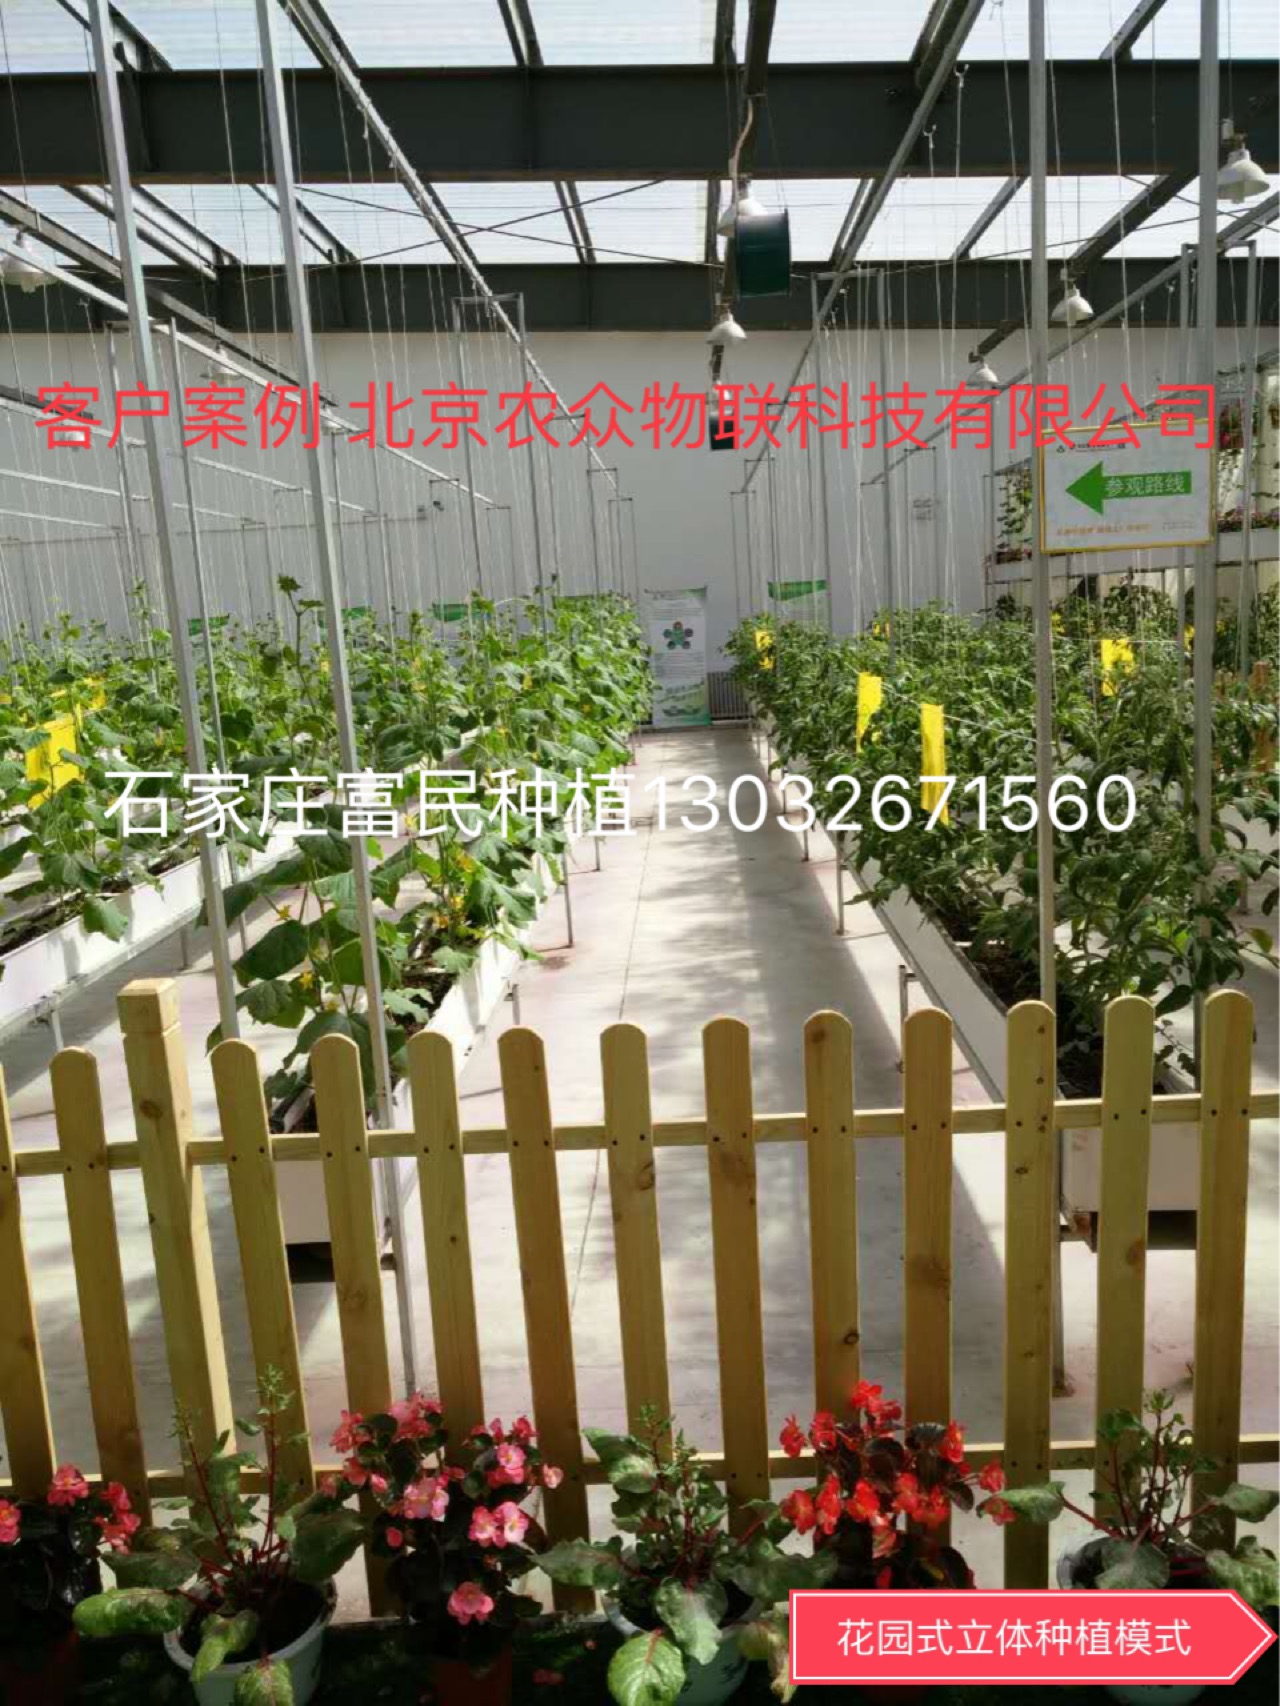 北京農眾物聯科技有限公司